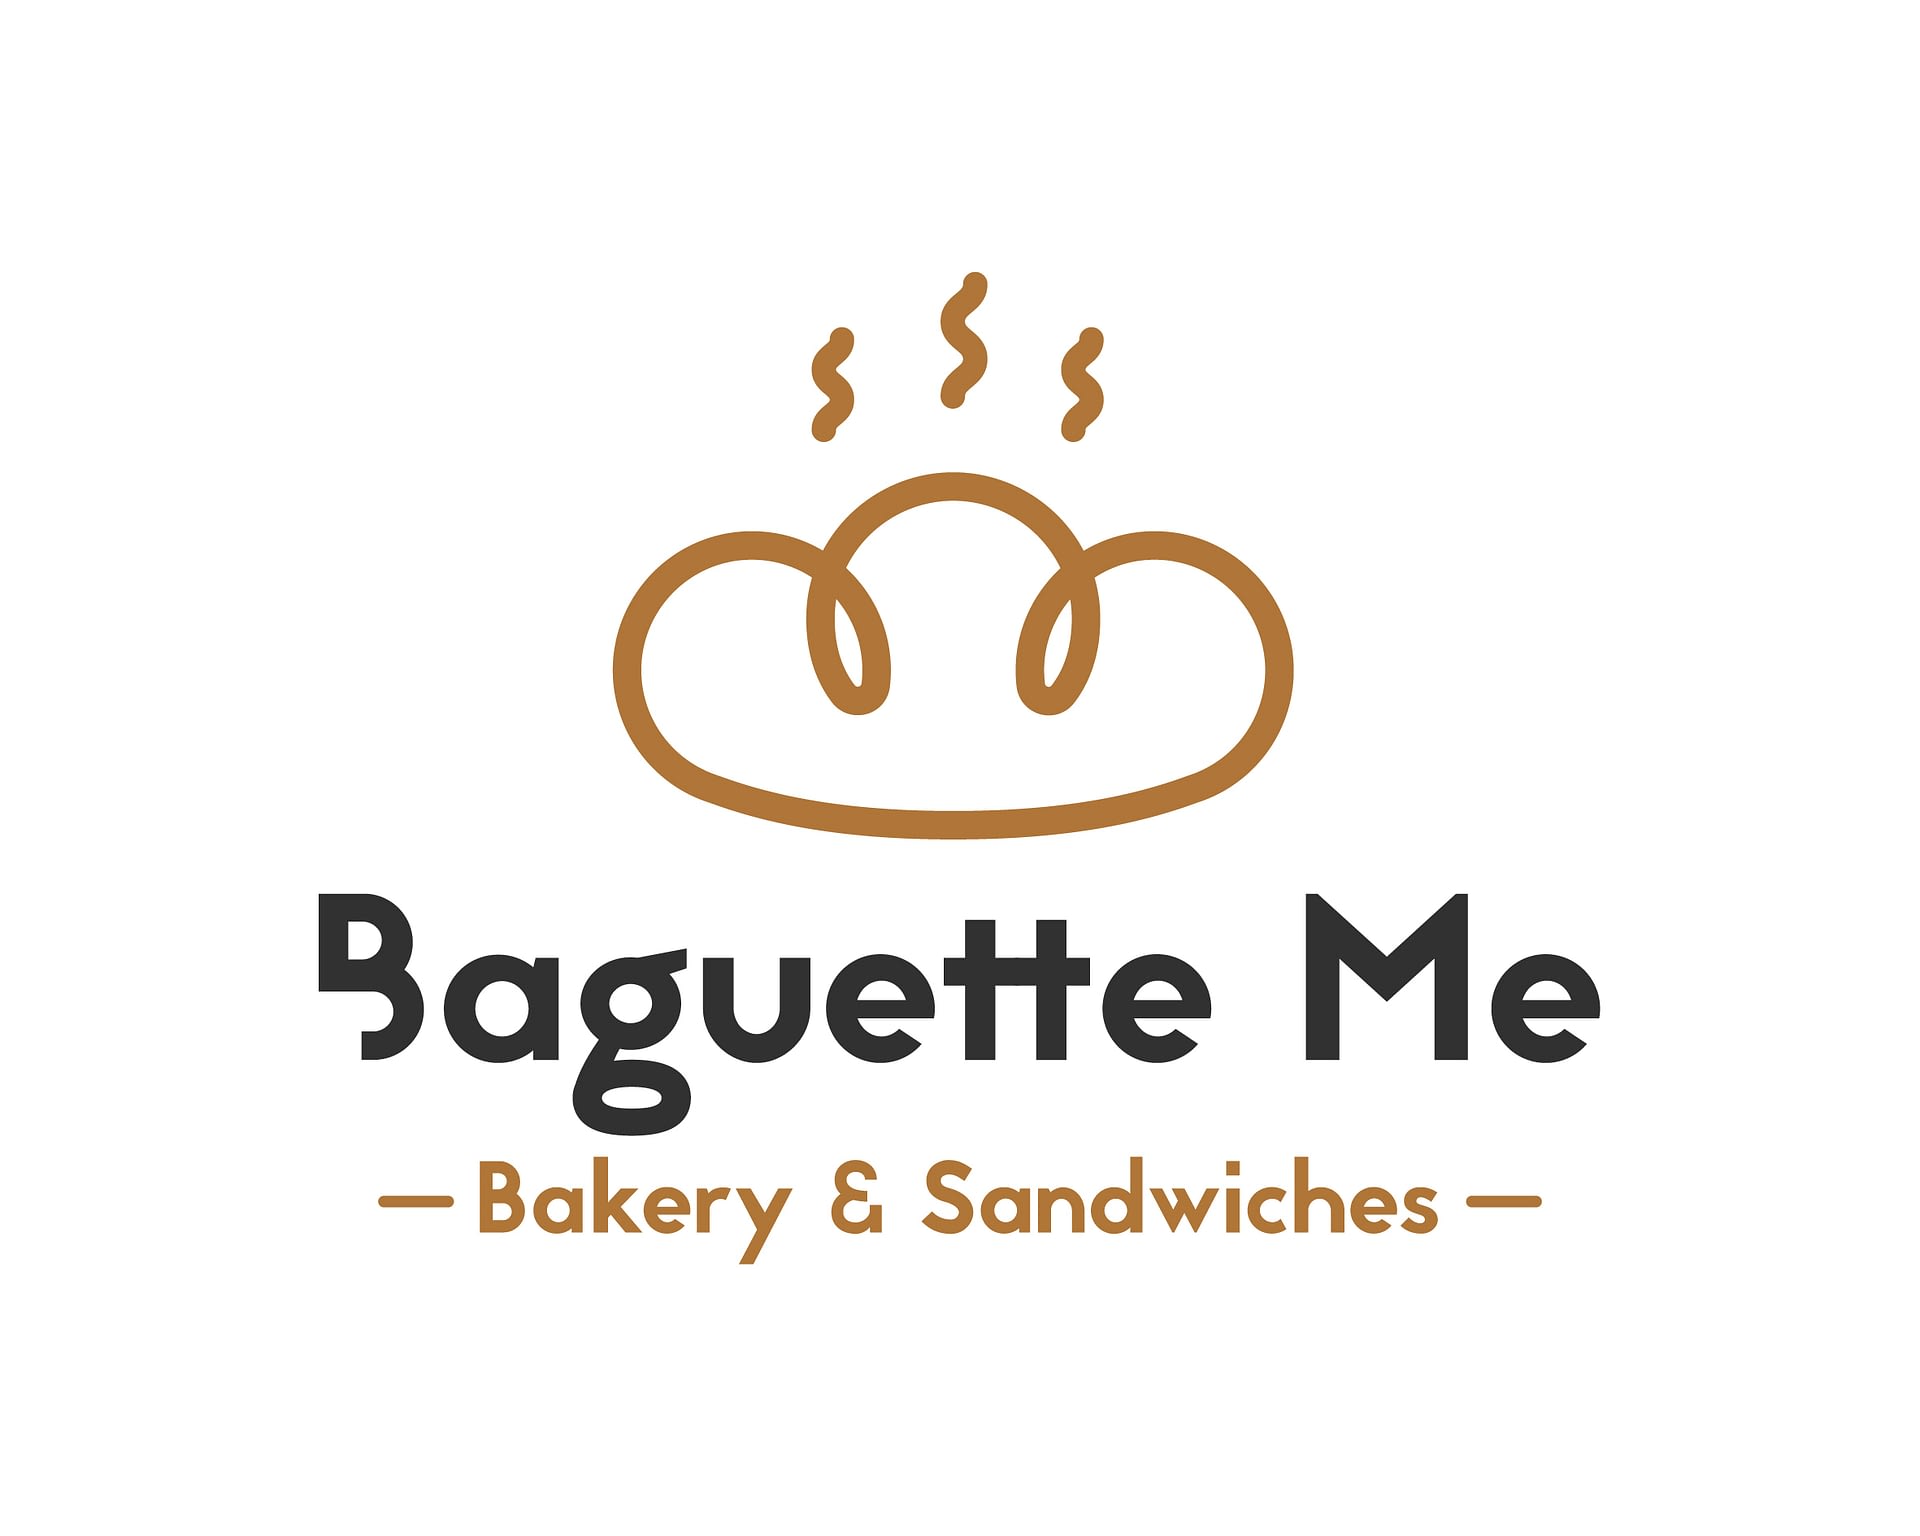 Diseño del logo de Baguette Me